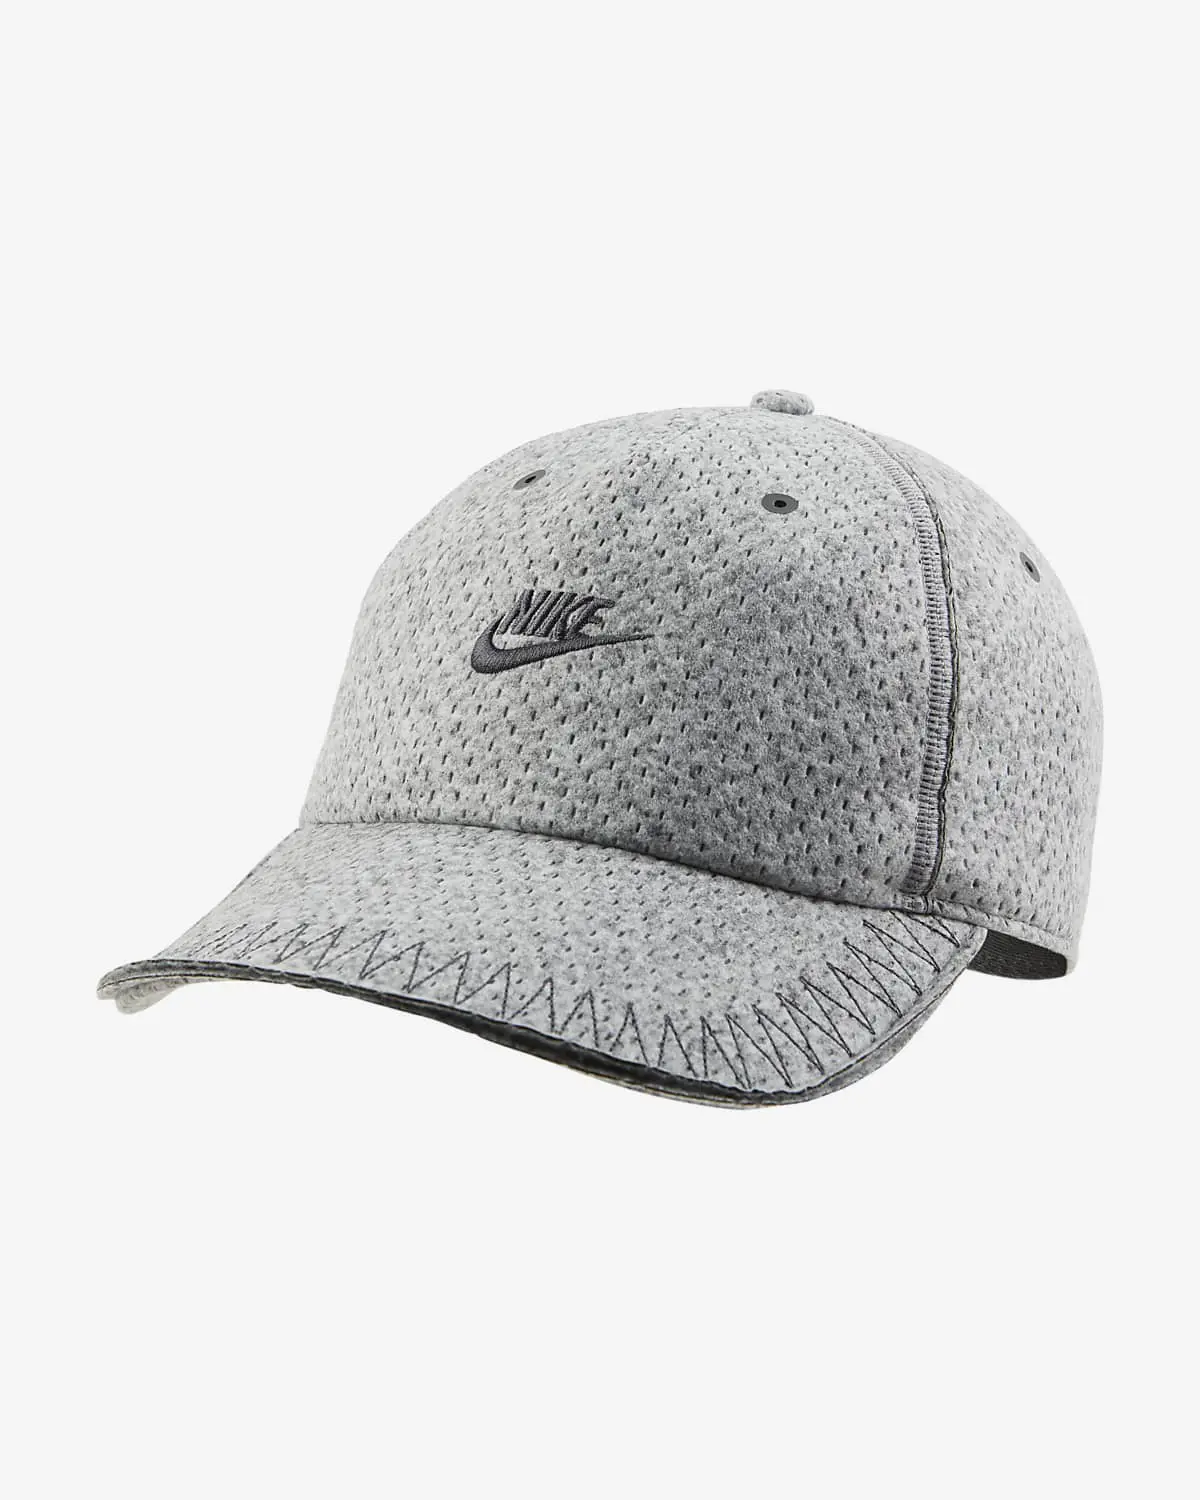 Nike Forward Cap. 1